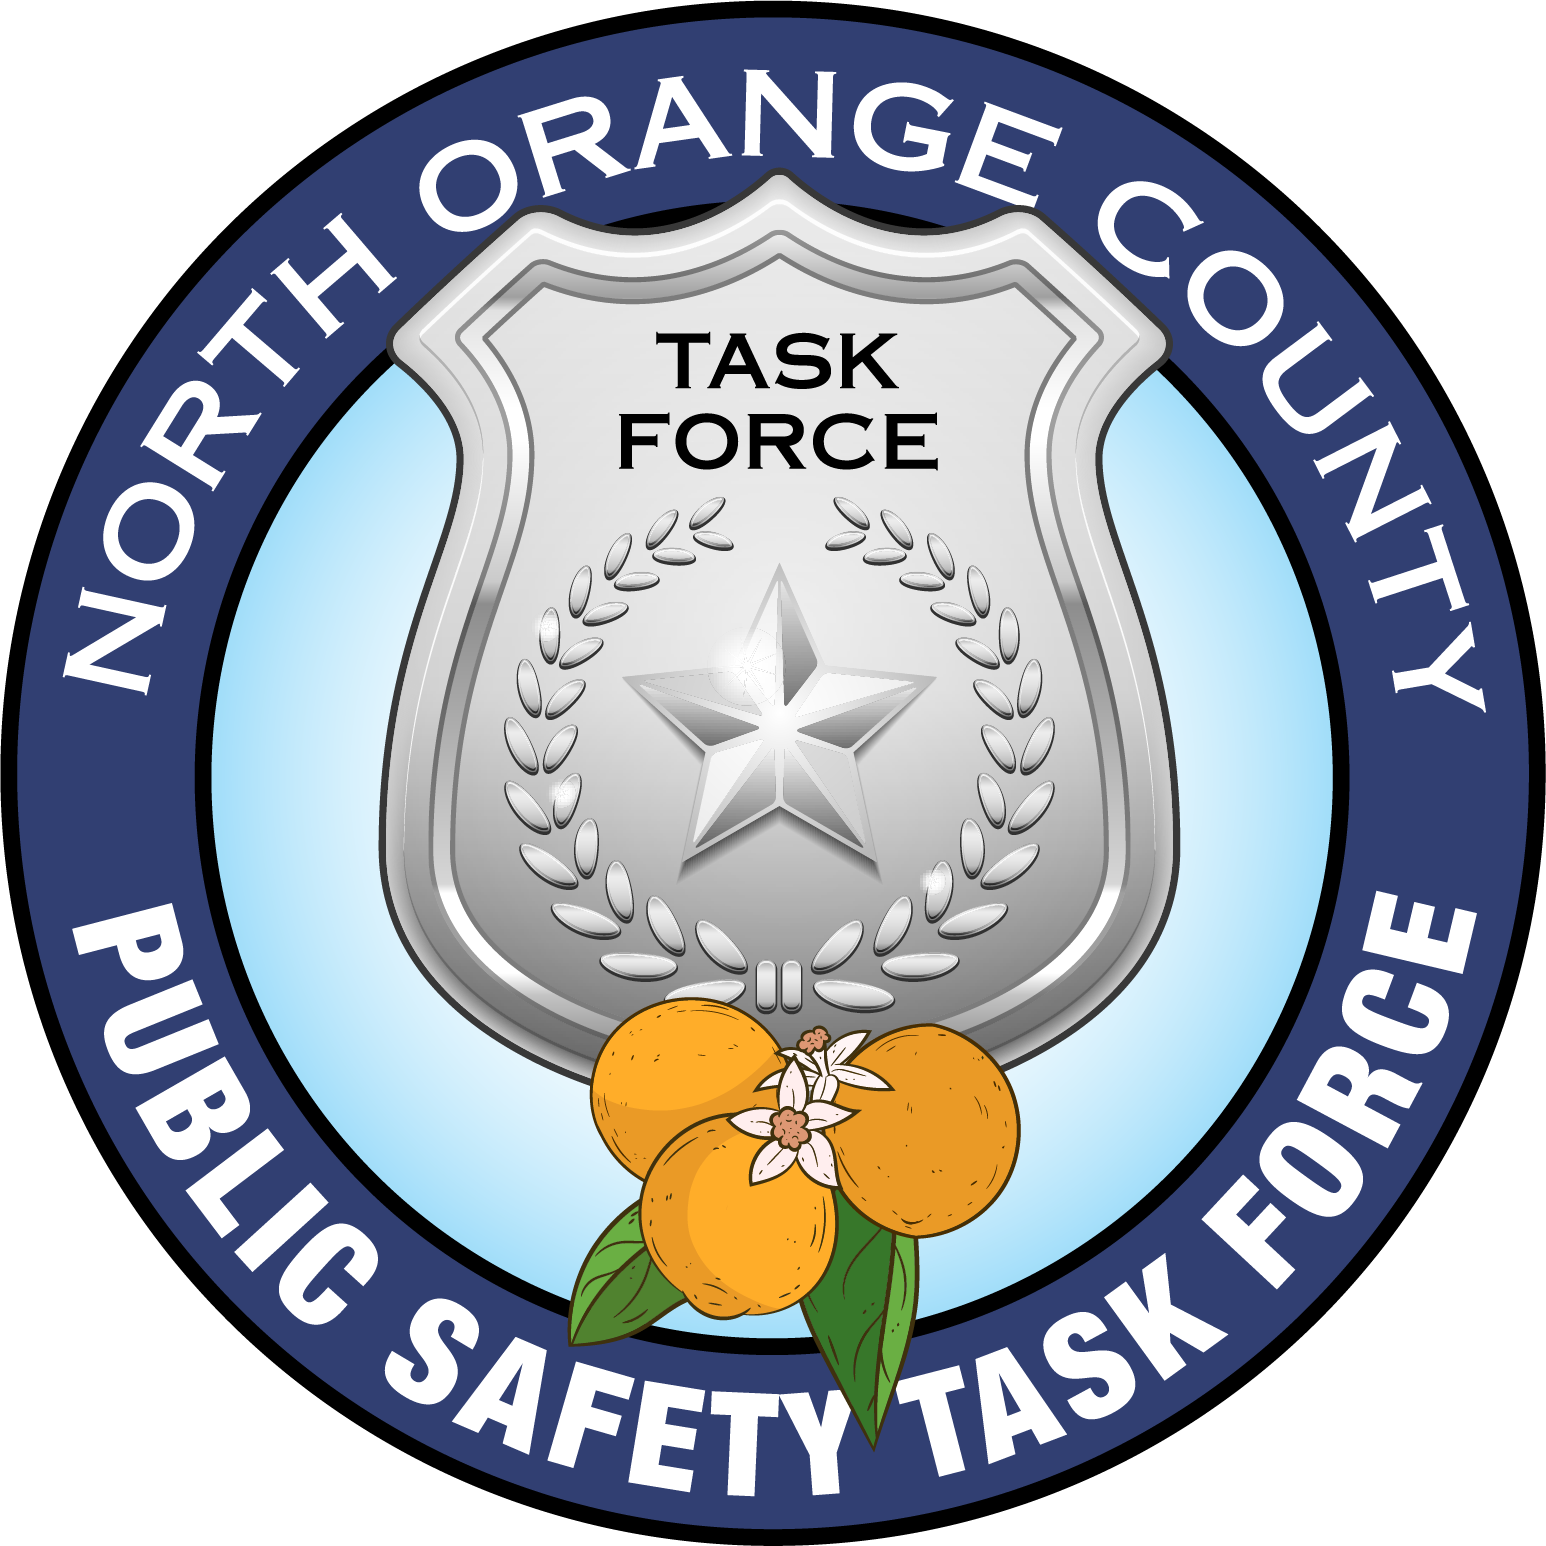 North Orange County Public Safety Collaborative